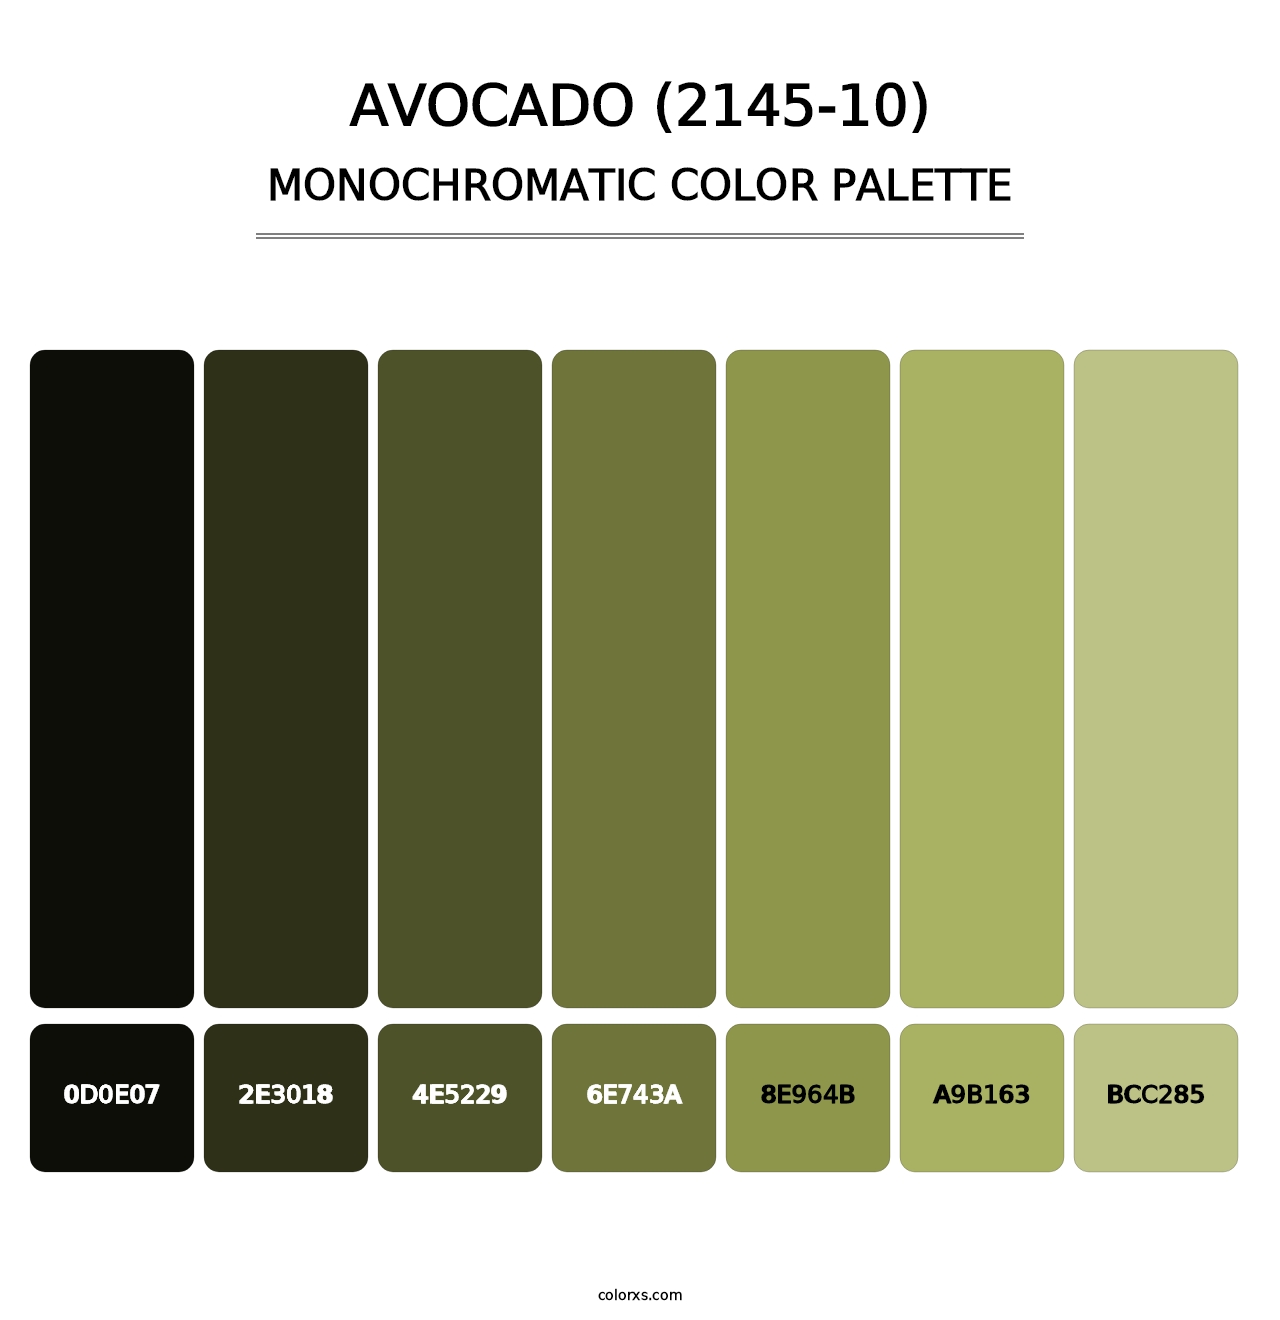 Avocado (2145-10) - Monochromatic Color Palette